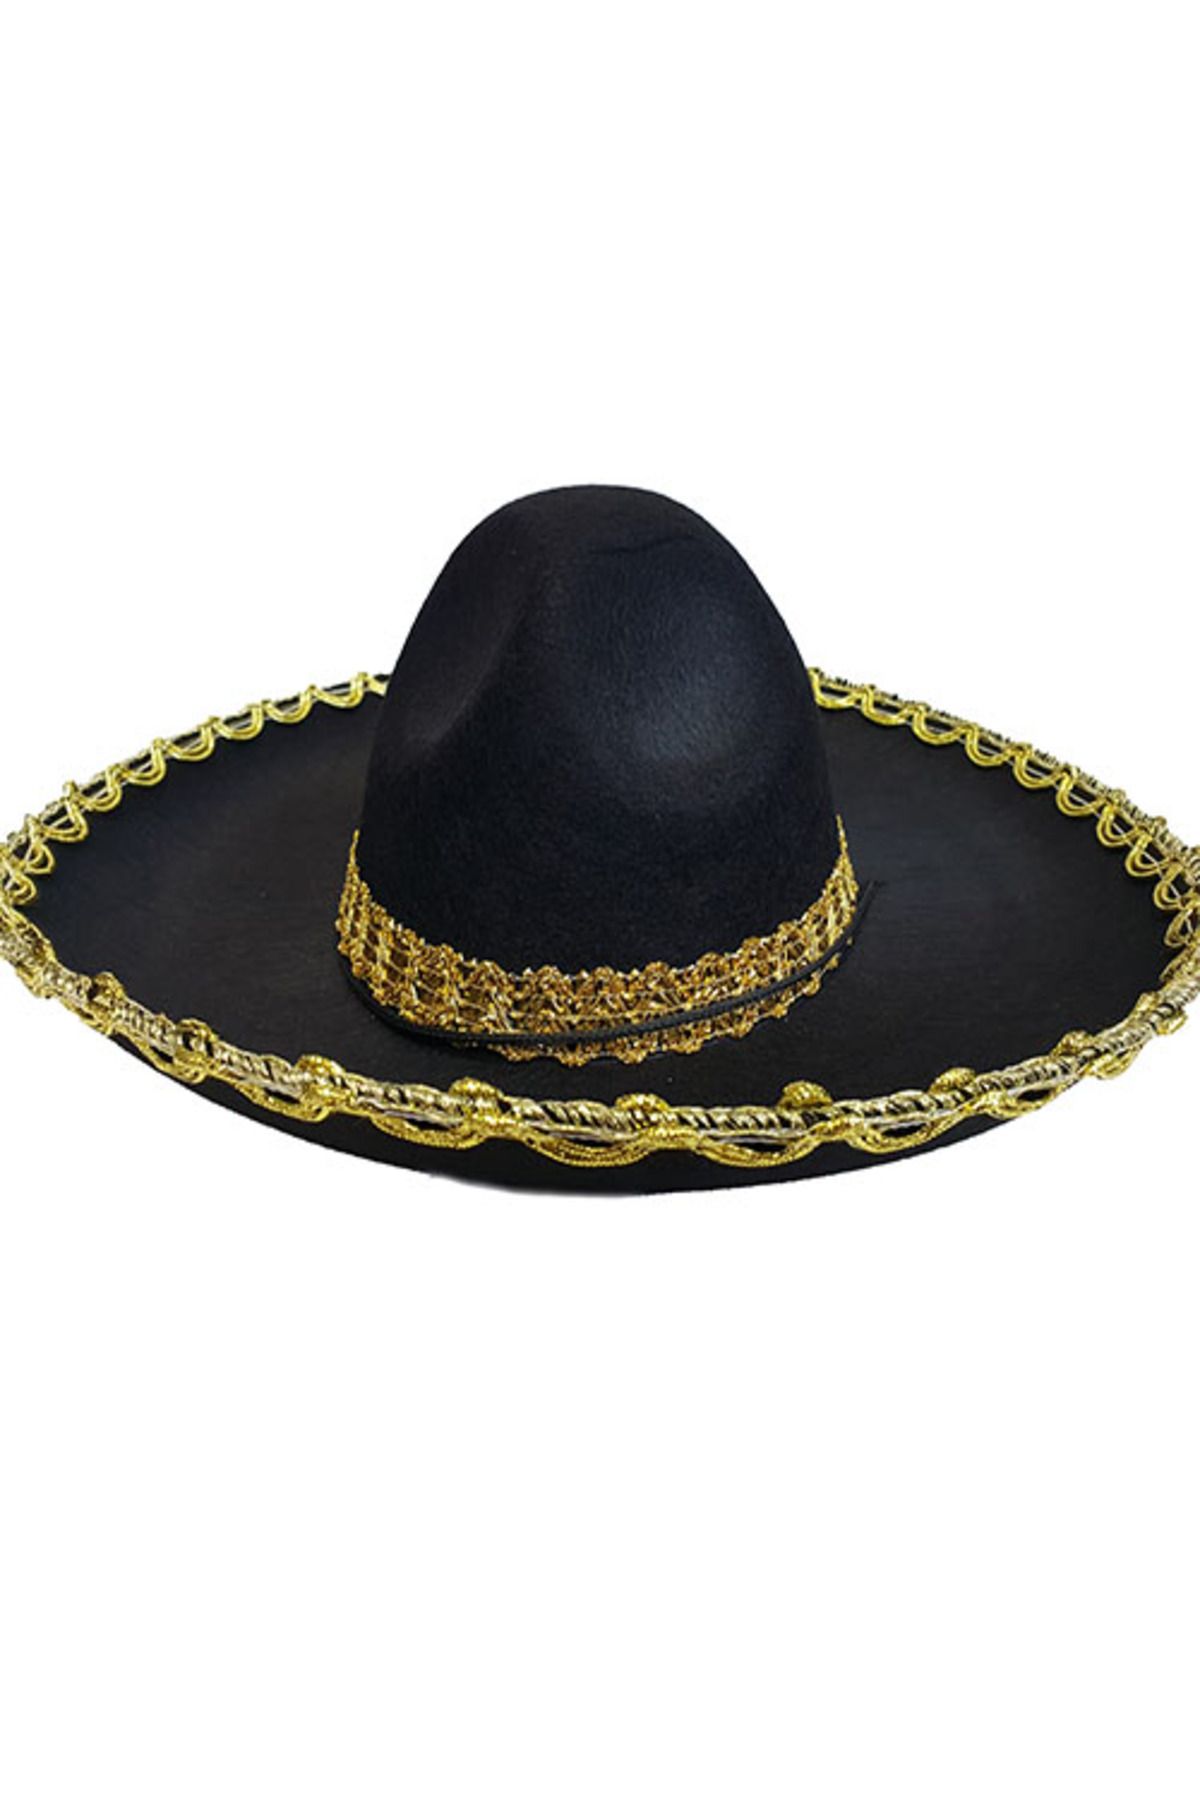 HİMARRY Himarry Altın Renk Şeritli Meksika Mariachi Latin Şapkası 55 Cm Çocuk